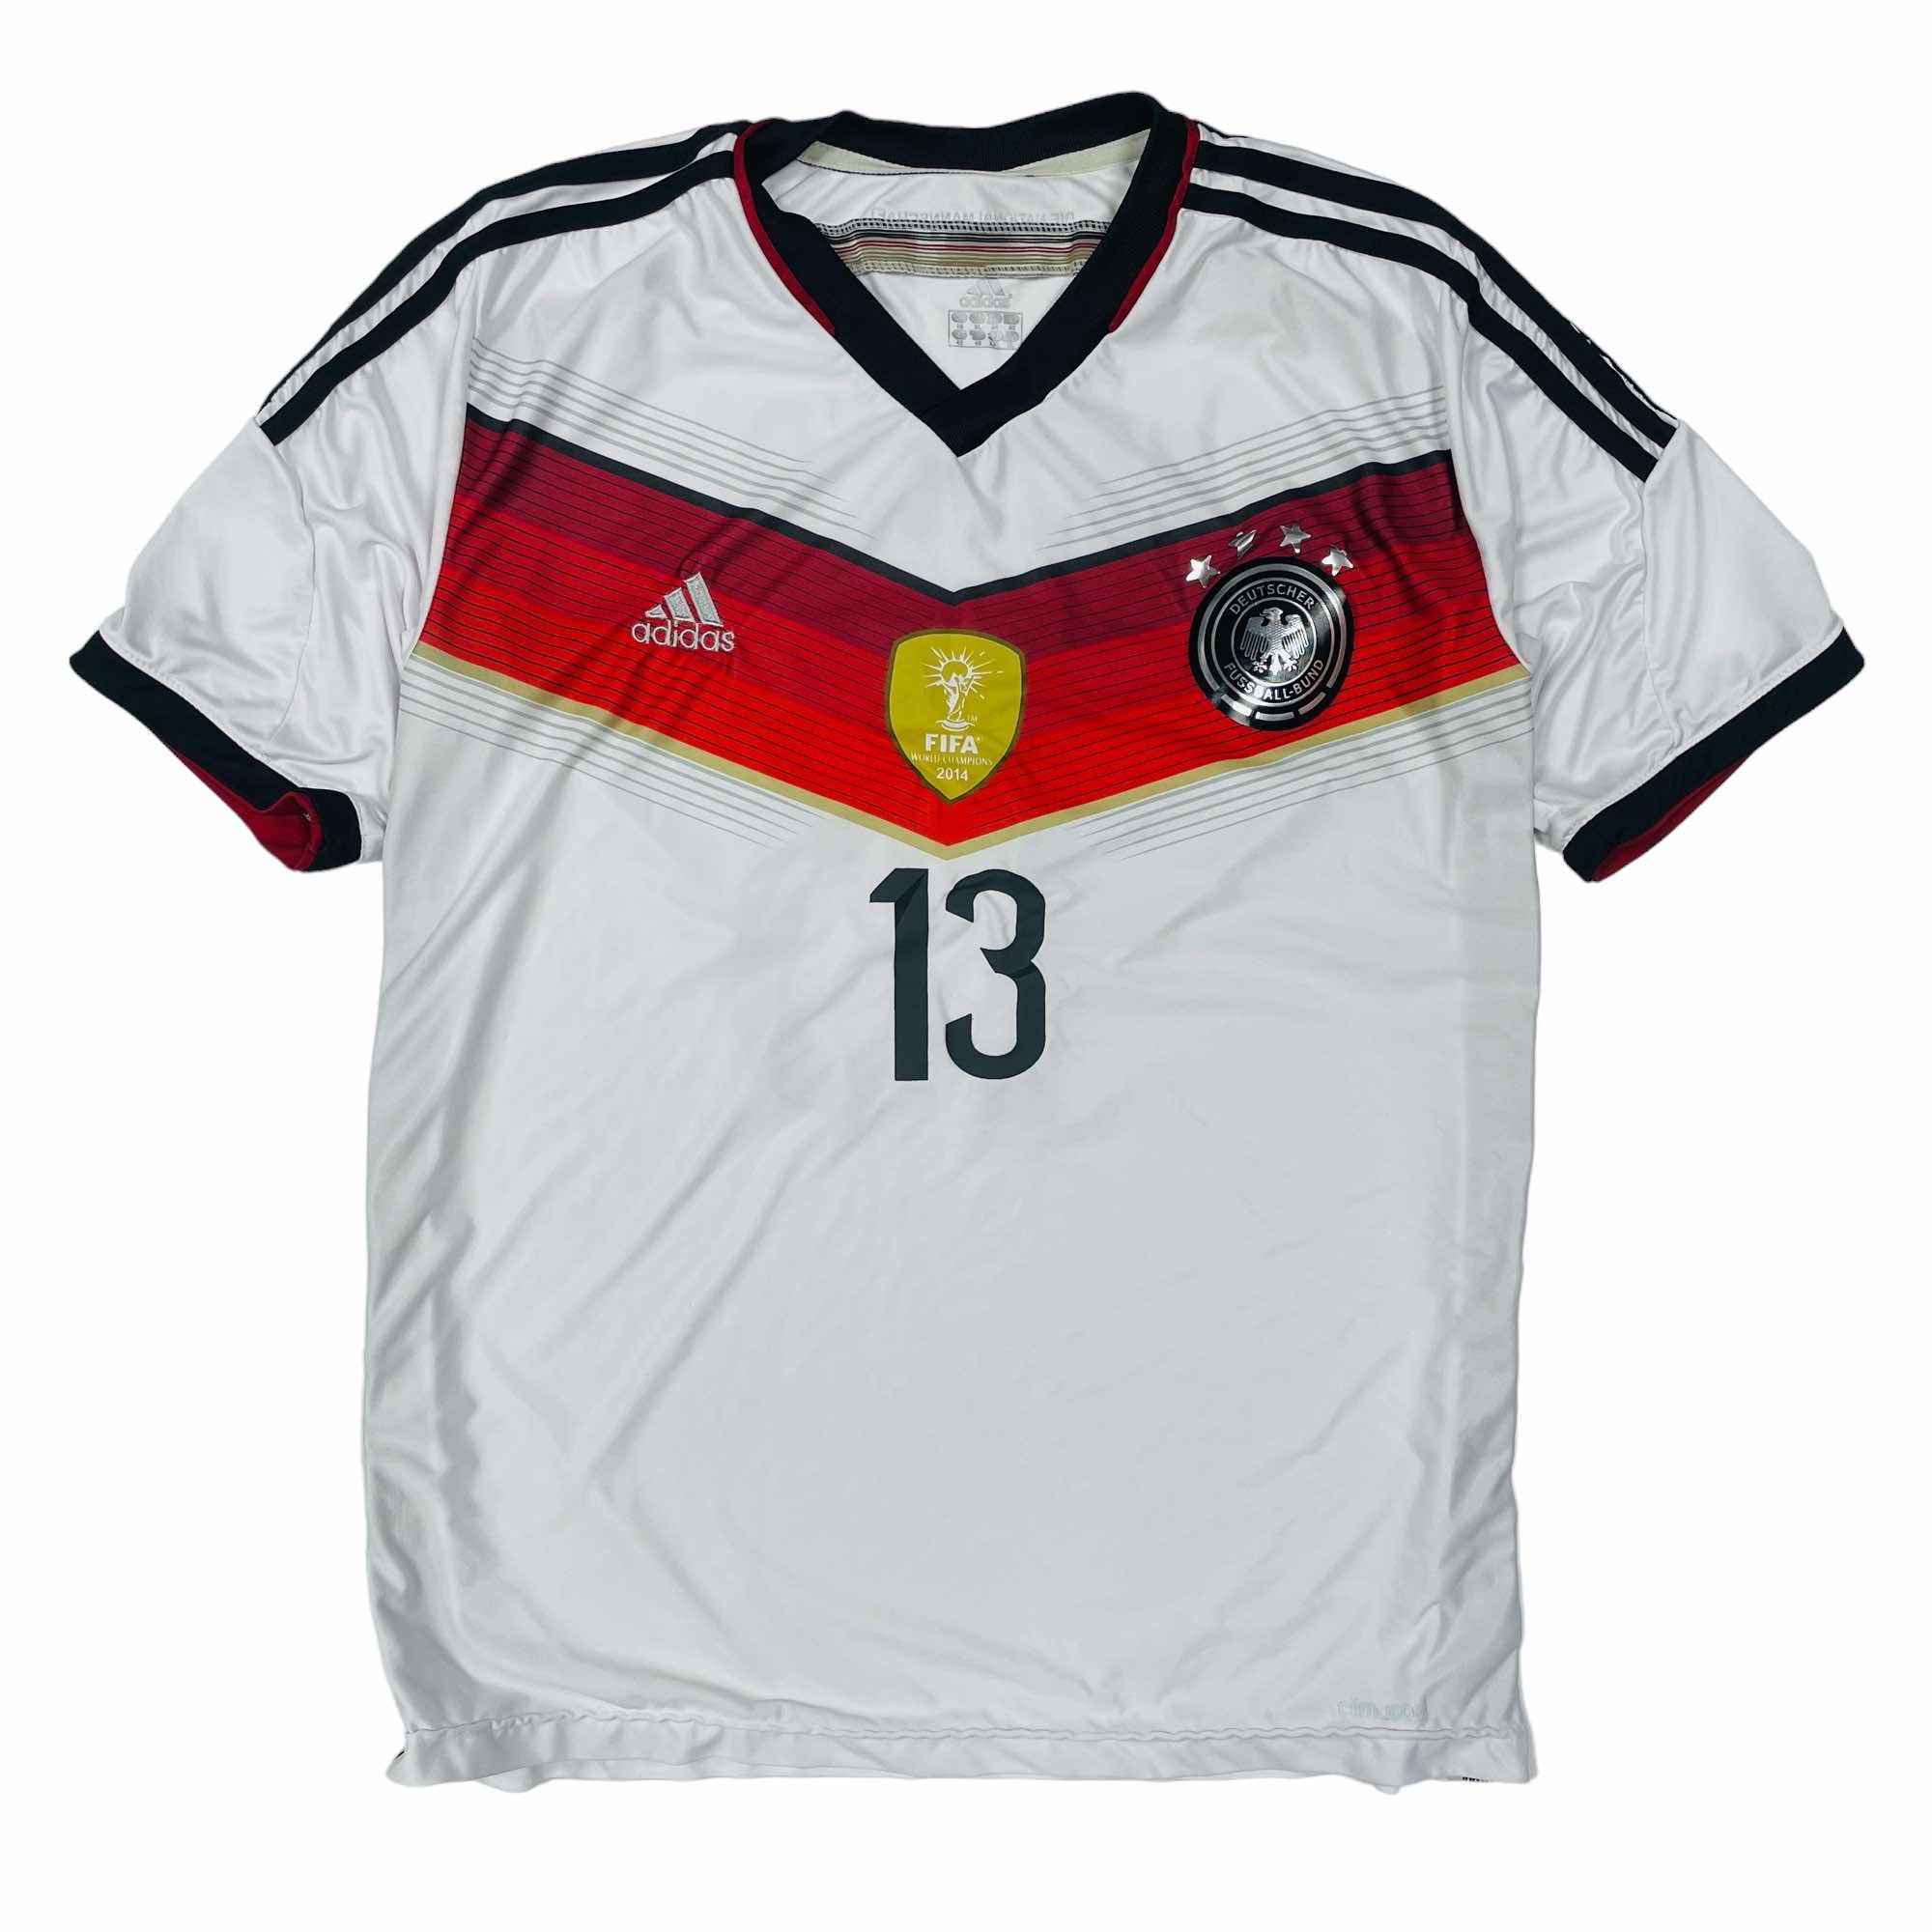 Germany 2014/15 World Cup Champions Adidas Thomas Muller Shirt - XL